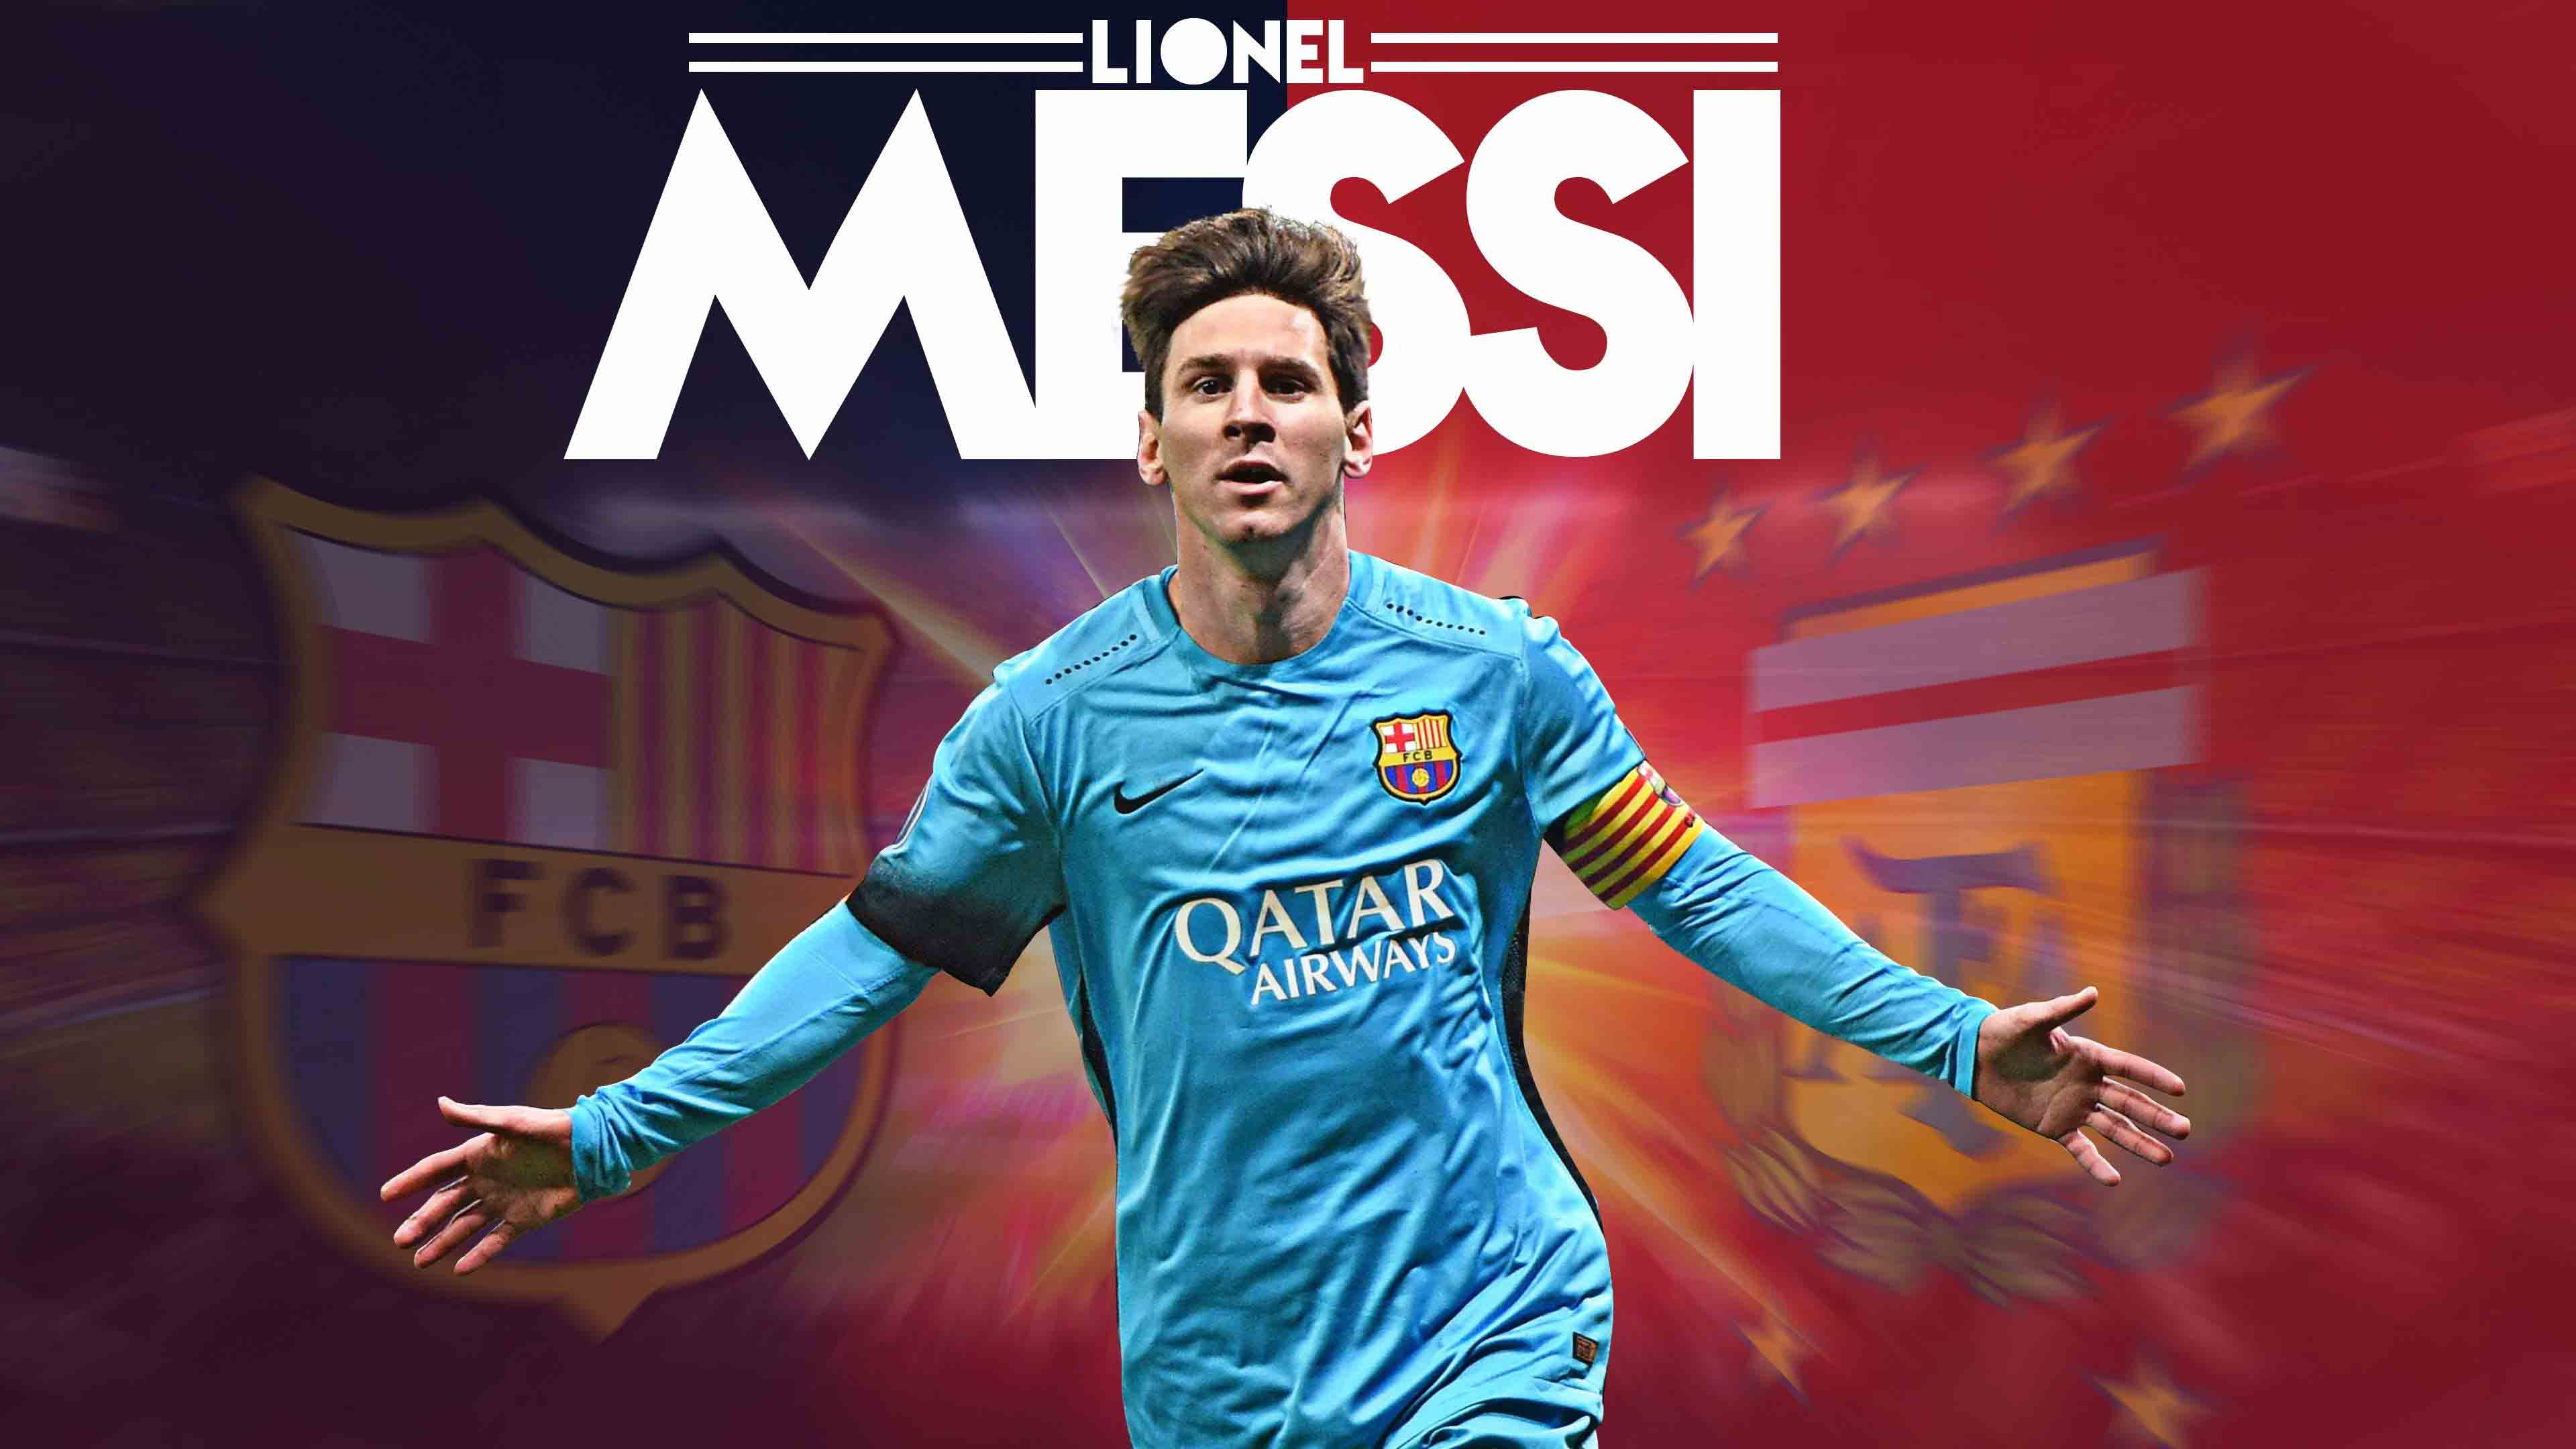 Tải xuống APK Hình nền Lionel Messi 4k 2020 SIÊU ĐẸP cho Android